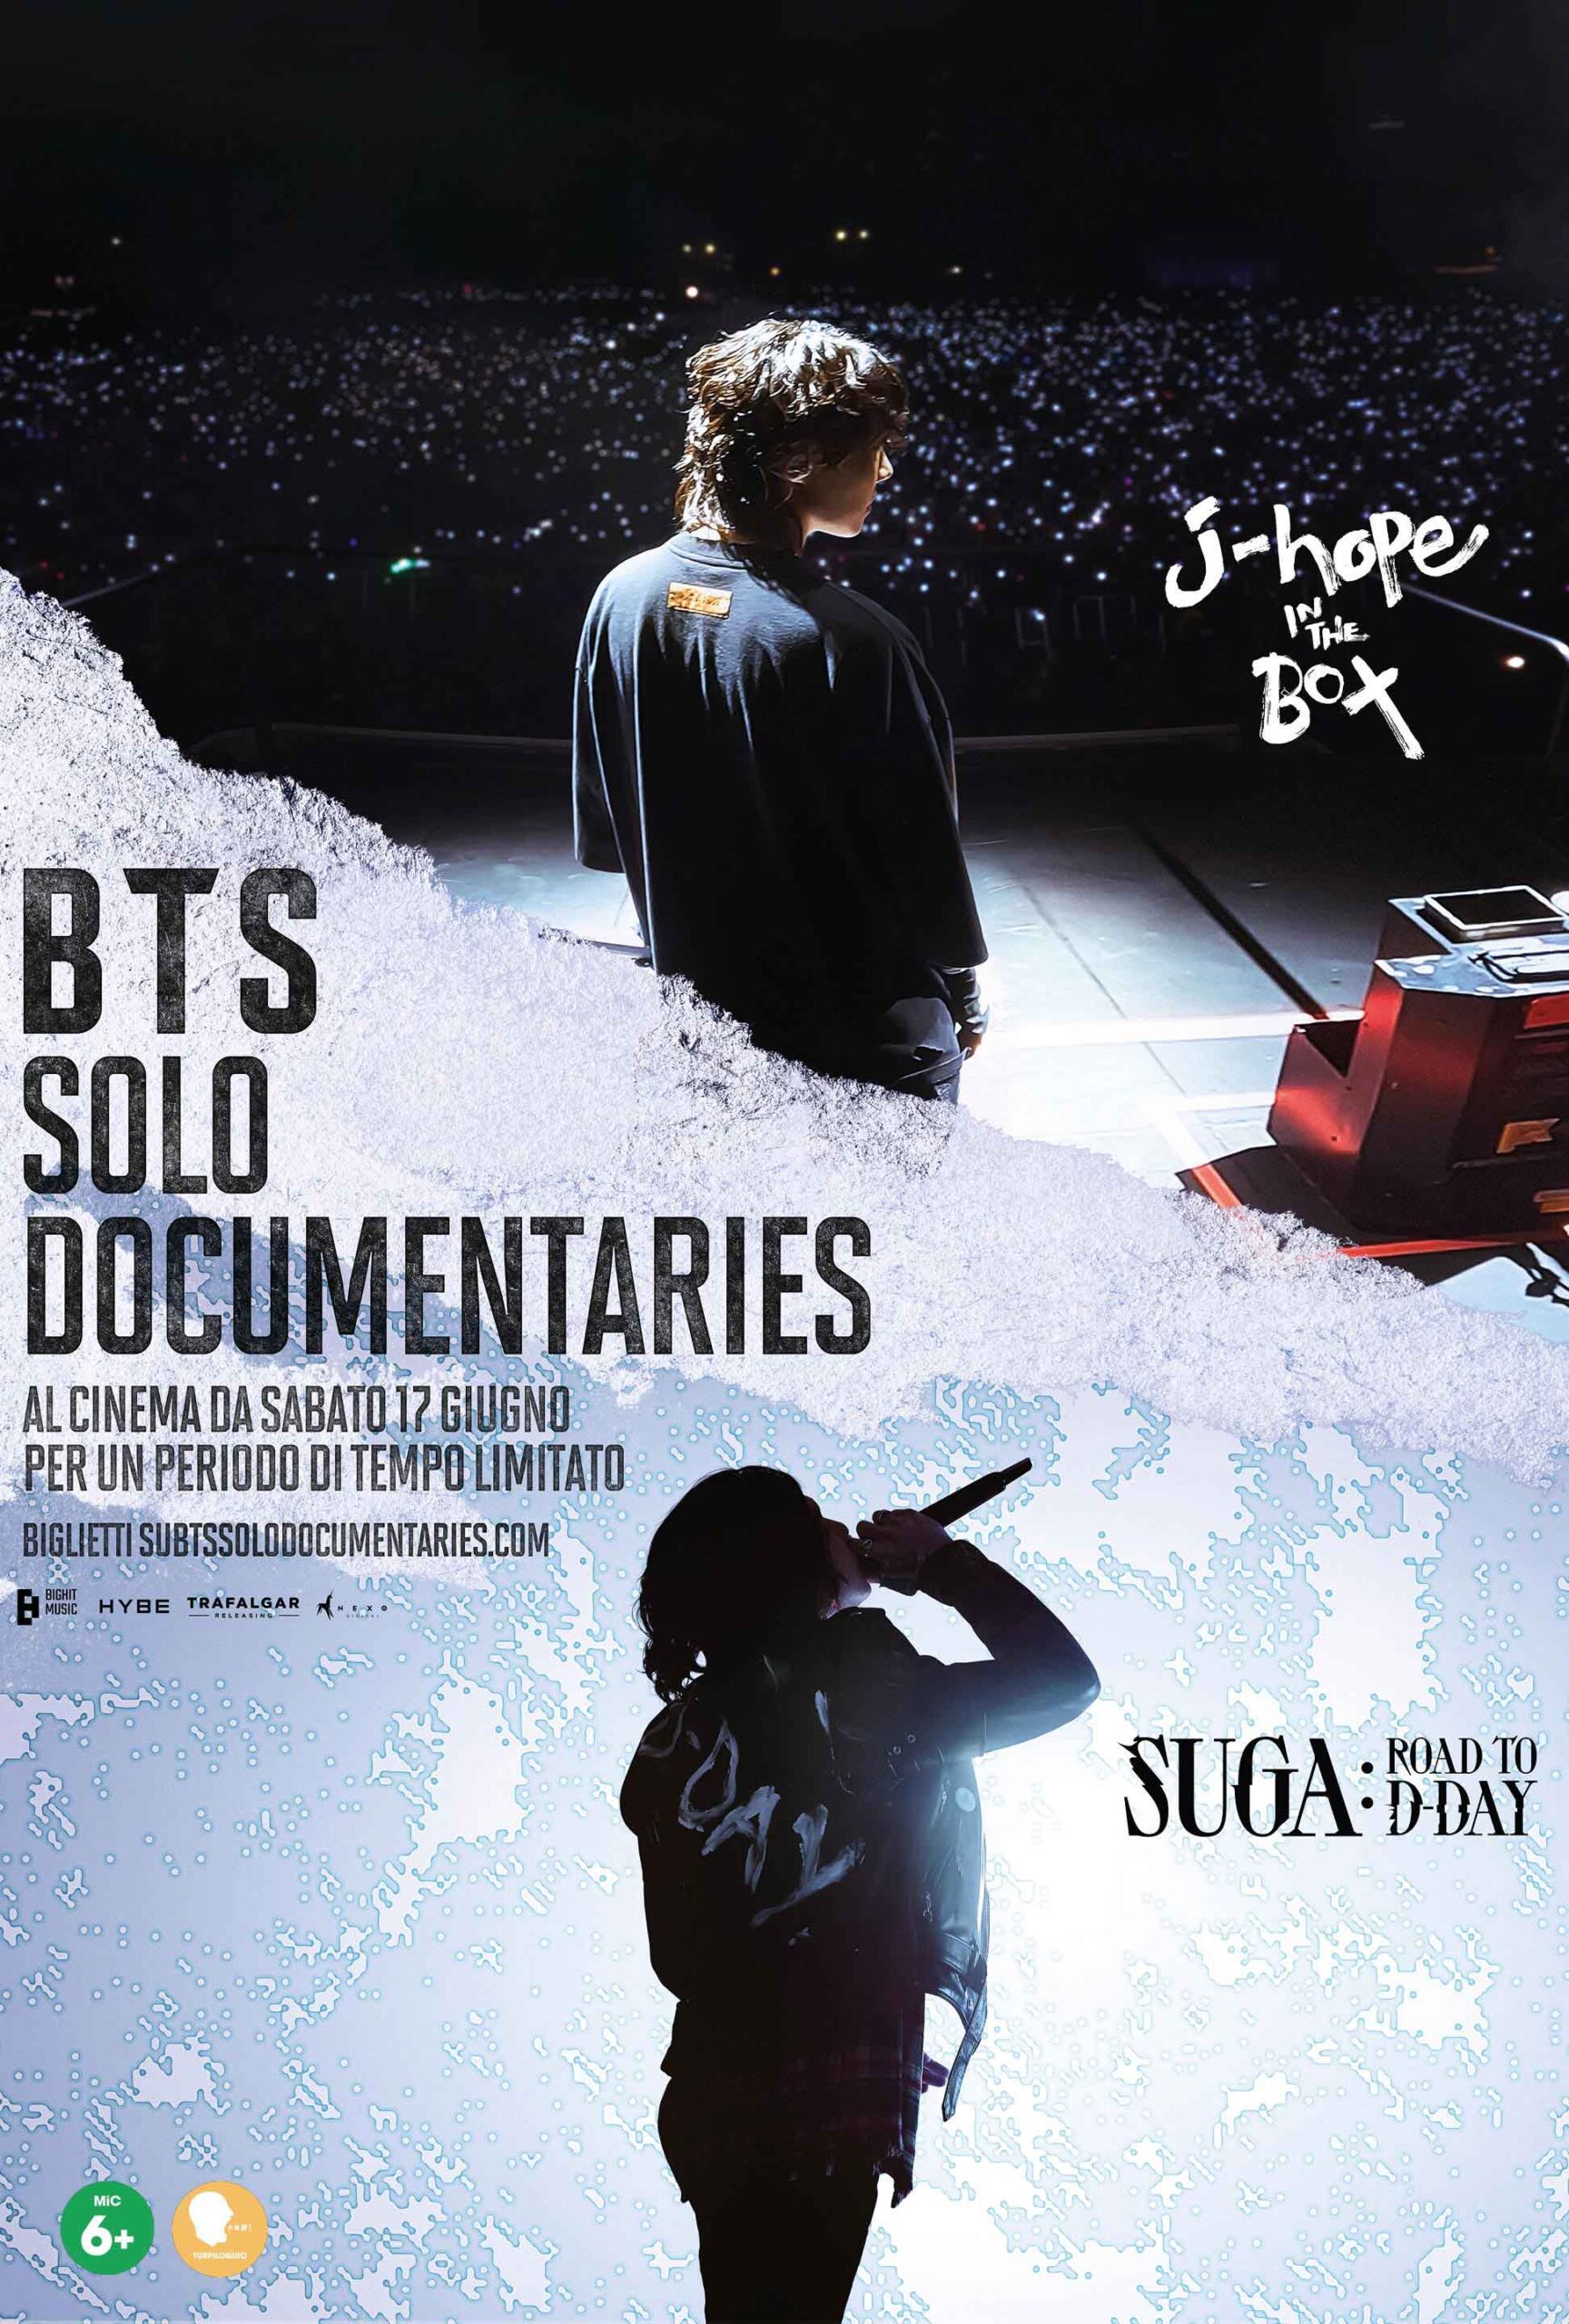 I BTS tornano al cinema con “BTS Solo Documentaries”